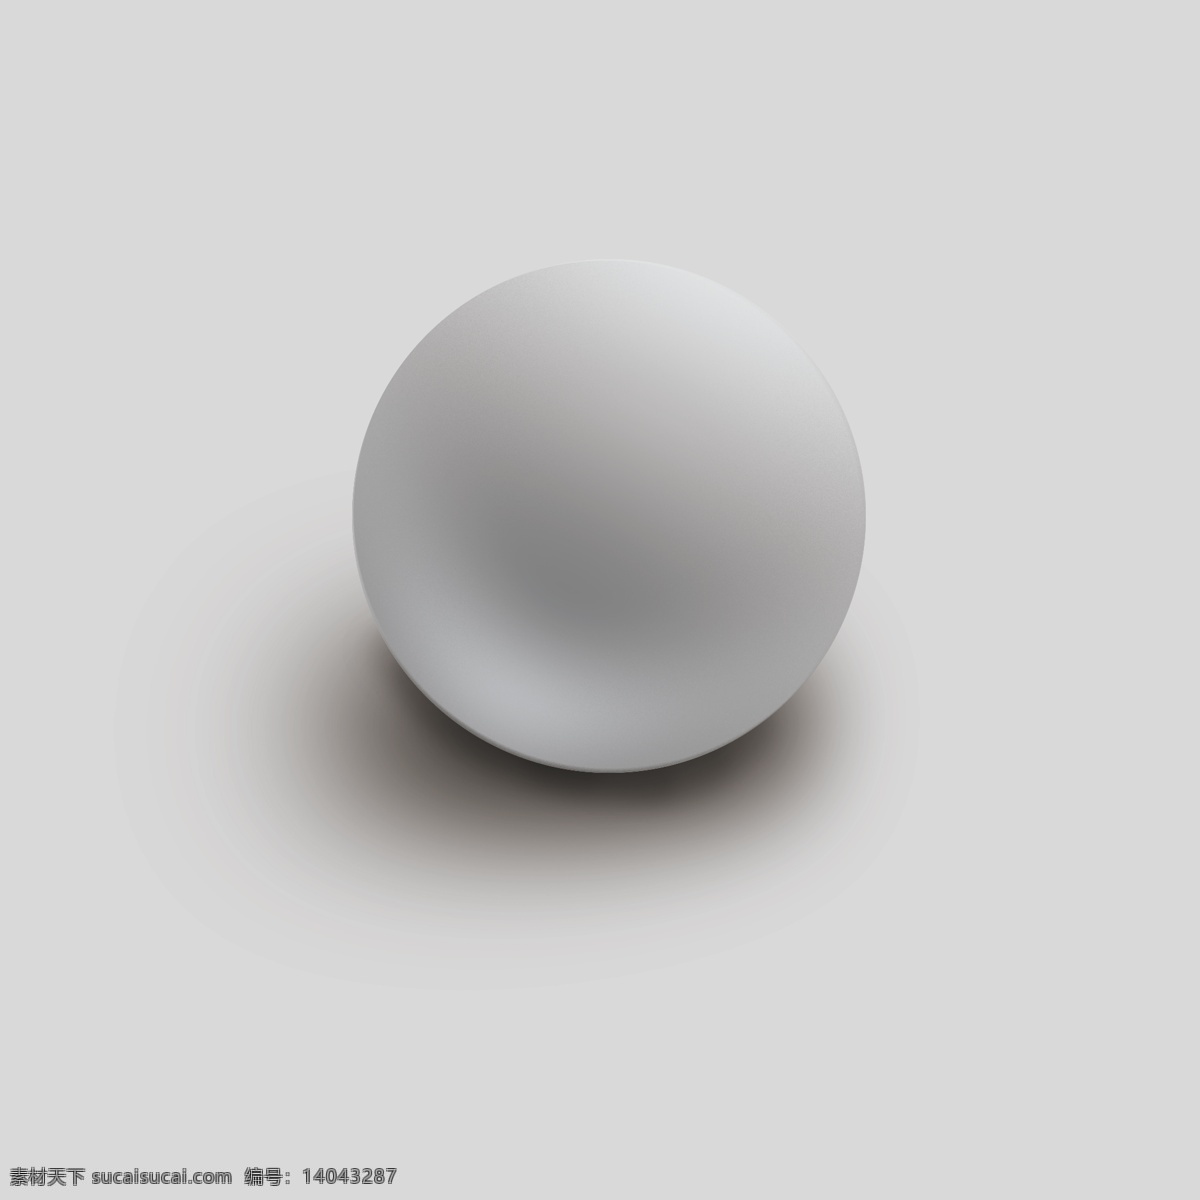 石膏球 球体 白色 分层素材 美术模型 参考 渐变 原创手绘素材